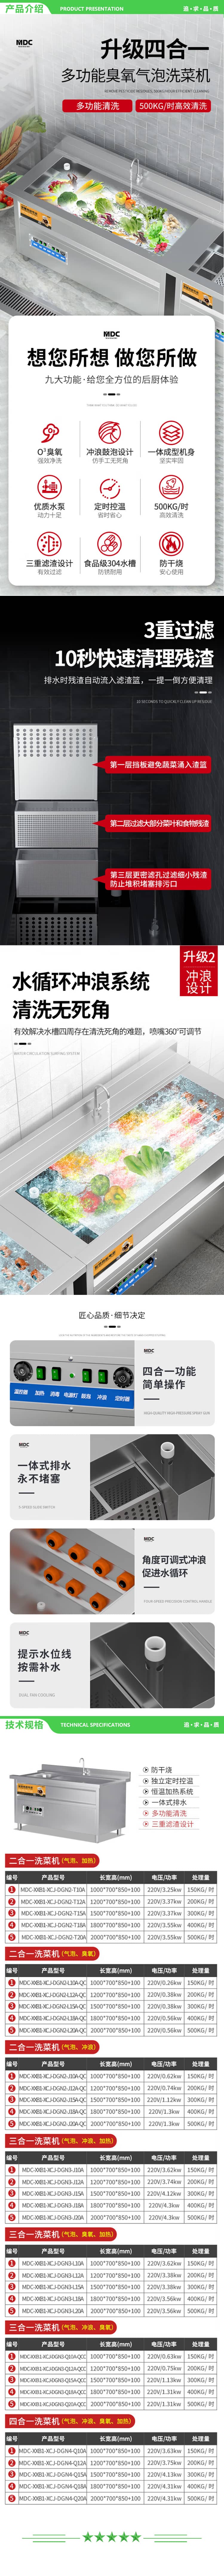 麦大厨 MDC-XXB1-XCJ-DGN2-J18A-QC 商用洗菜机全自动多功能涡流气泡冲浪式食堂果蔬清洗机 2.jpg